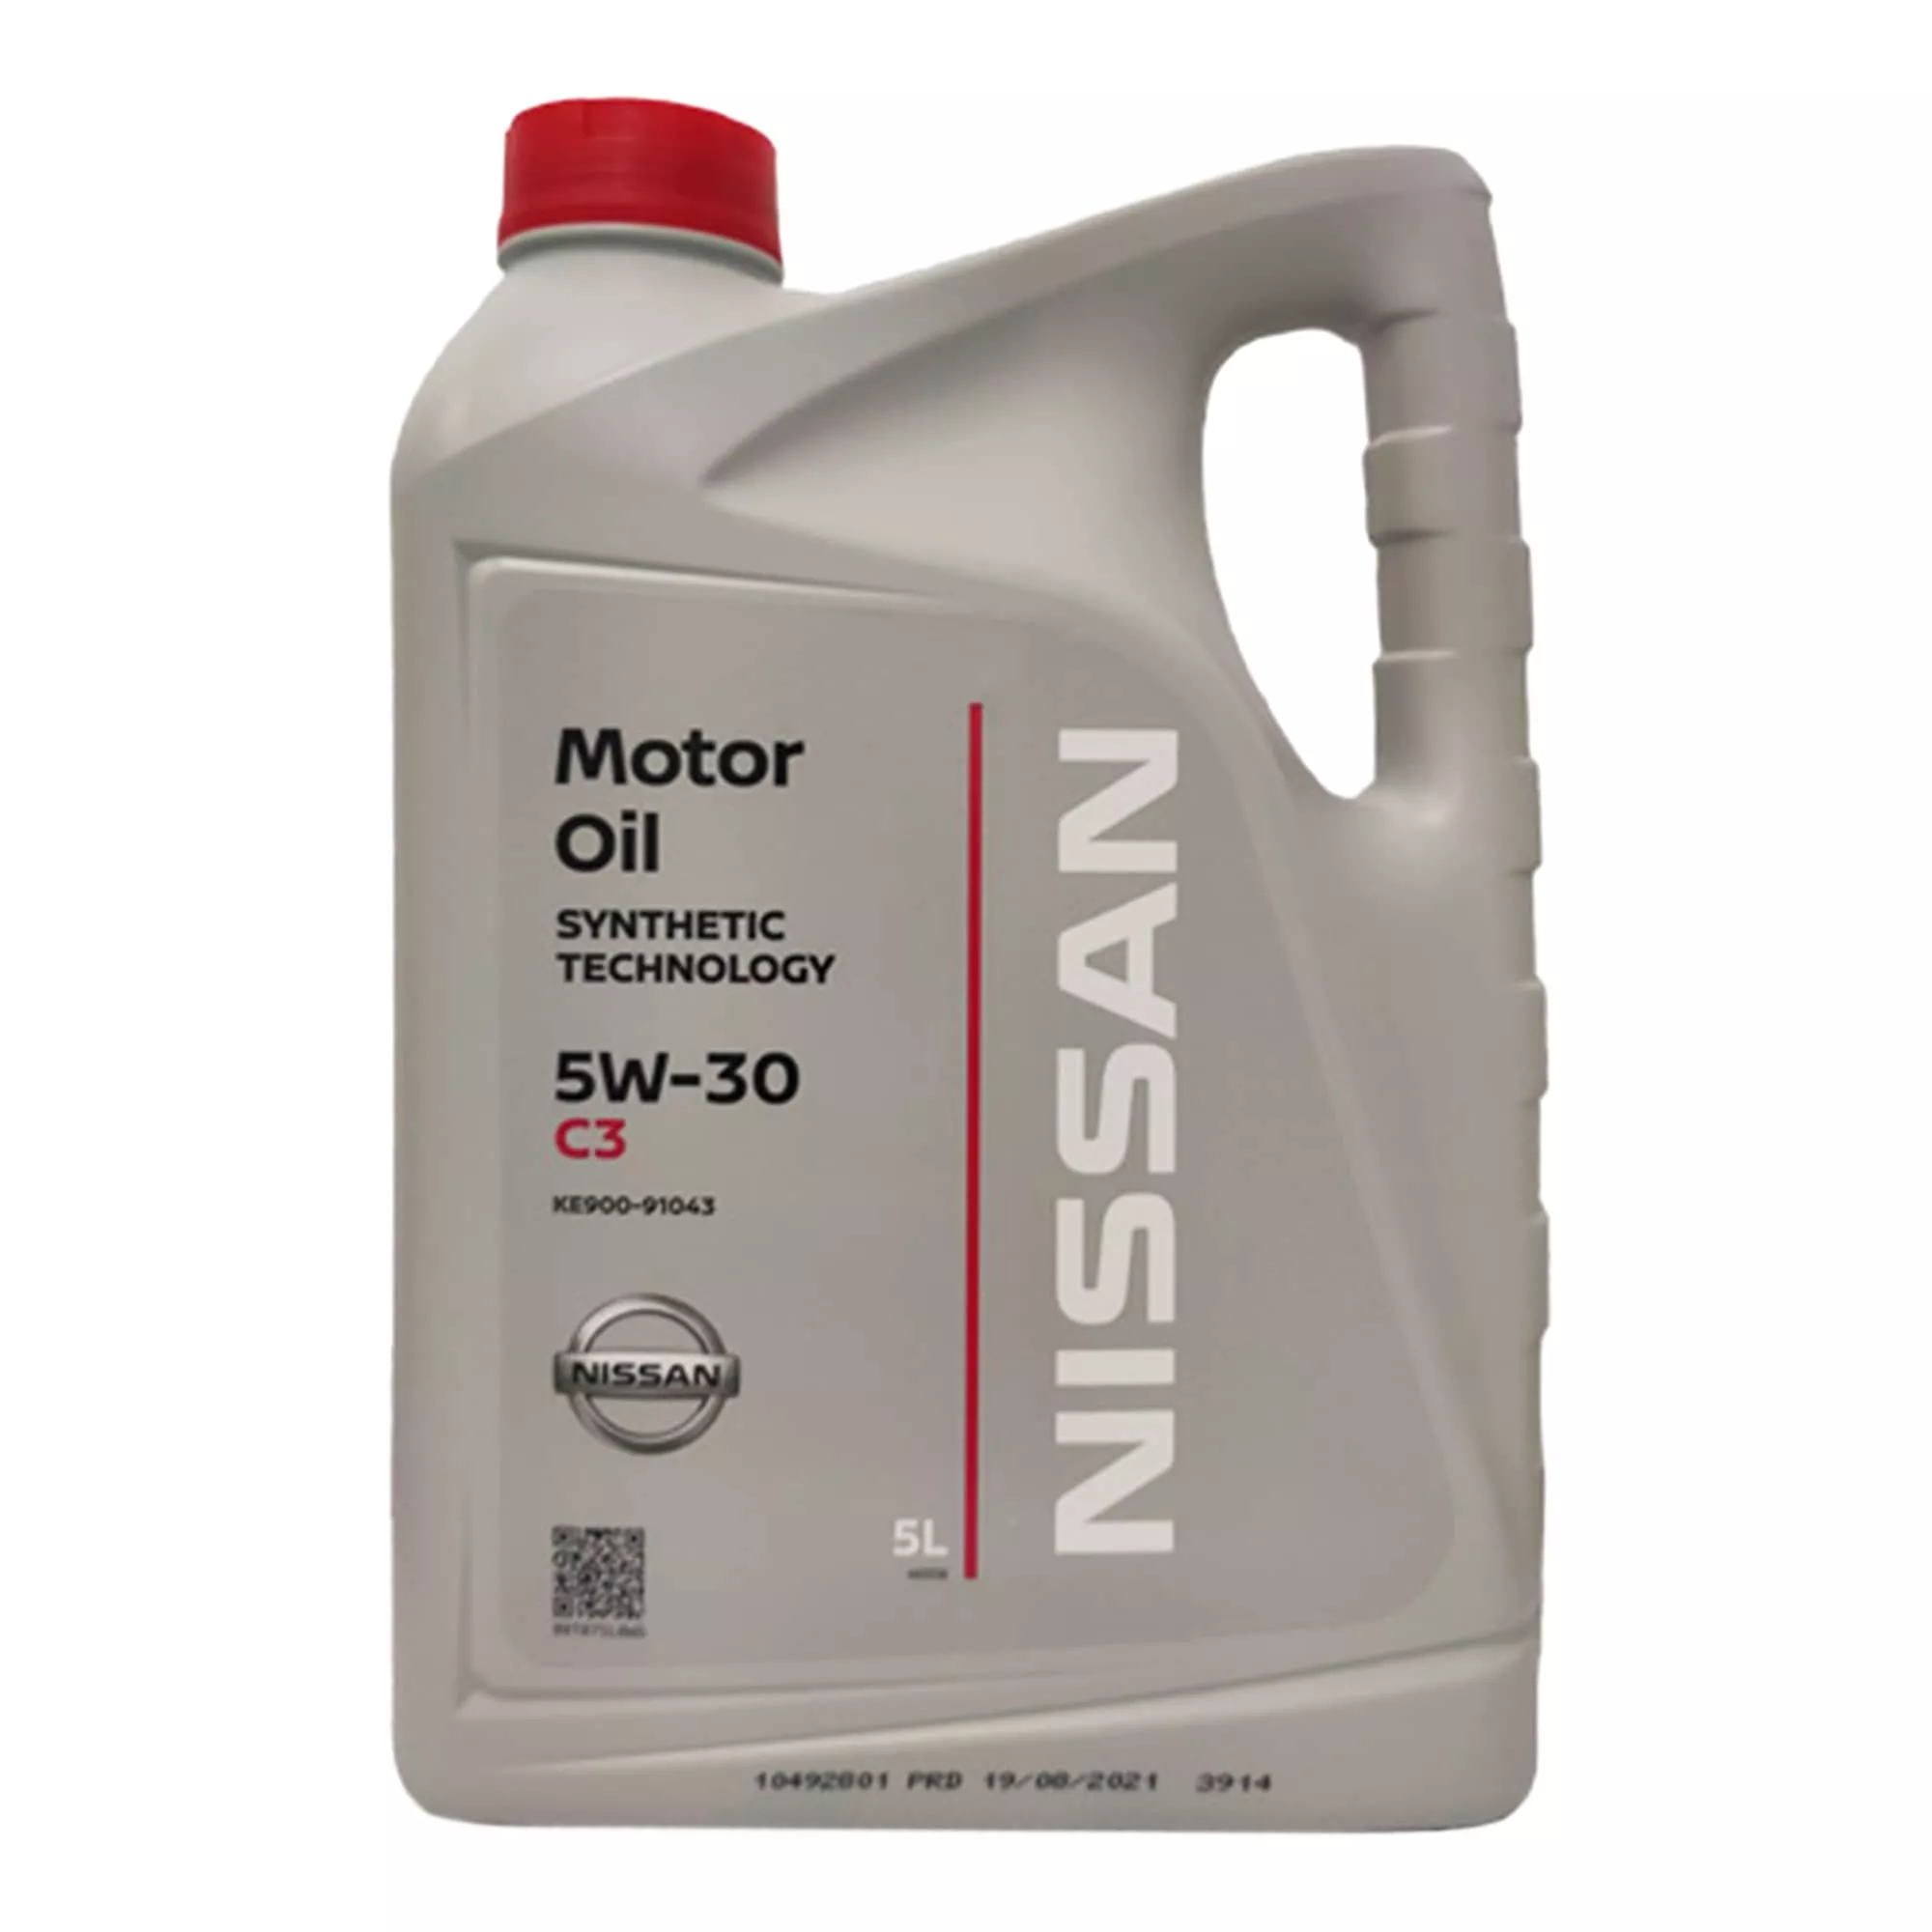 Моторное масло Nissan Motor Oil C3 5W-30 5л (KE90091043)